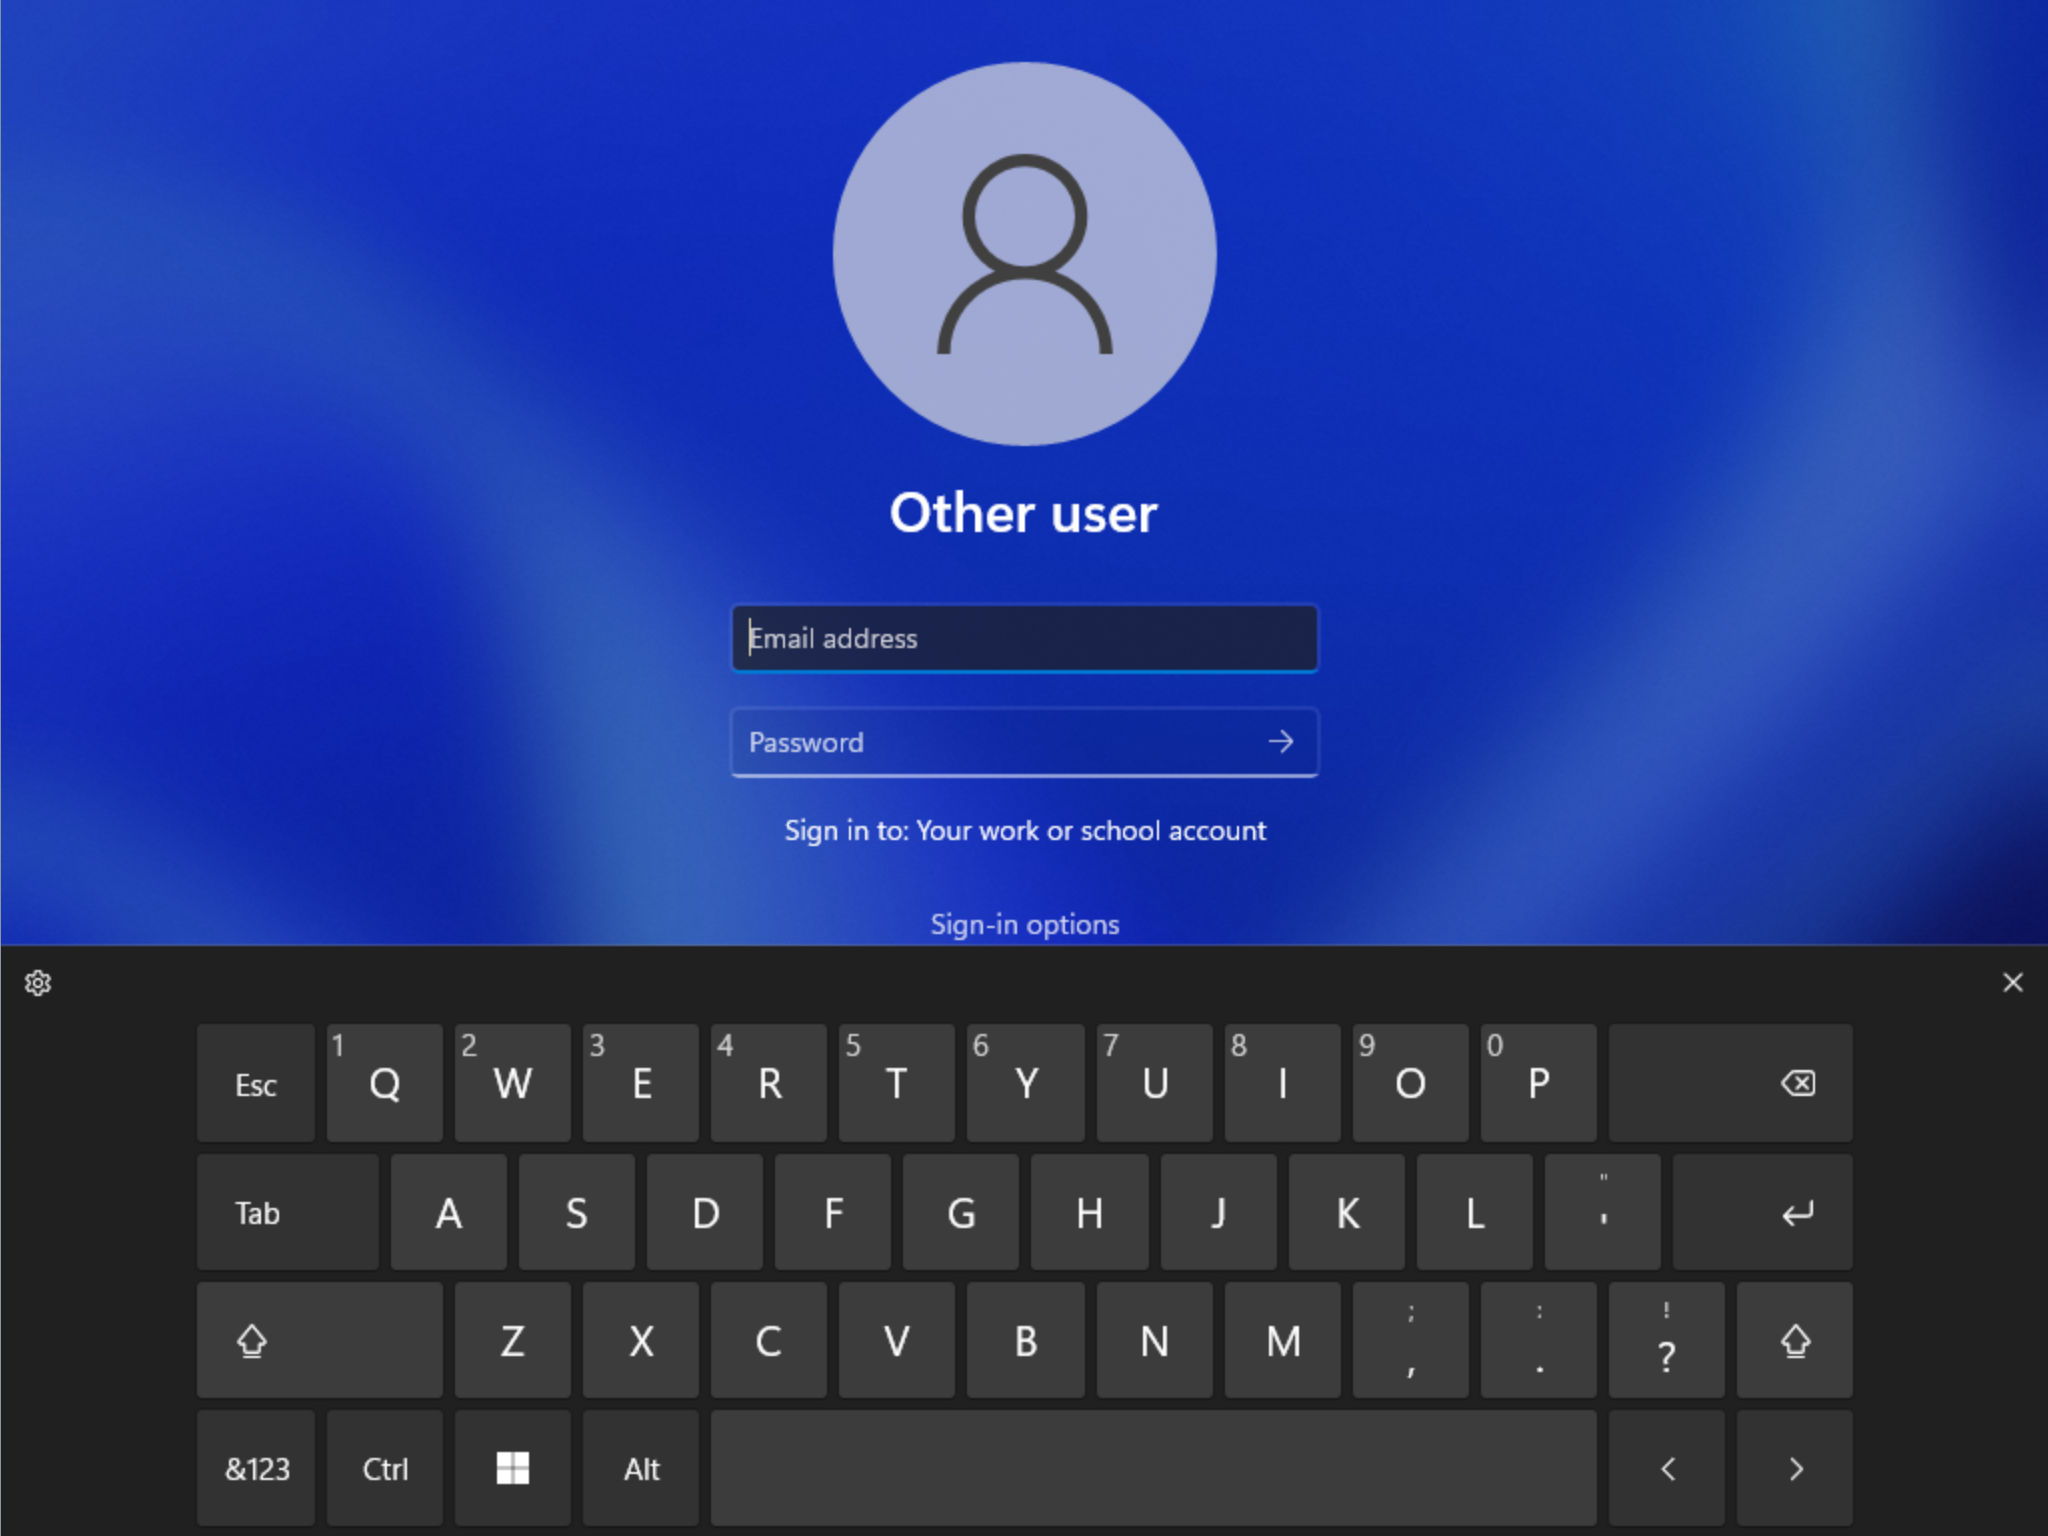 从锁定屏幕看到的更新的触摸键盘设计。